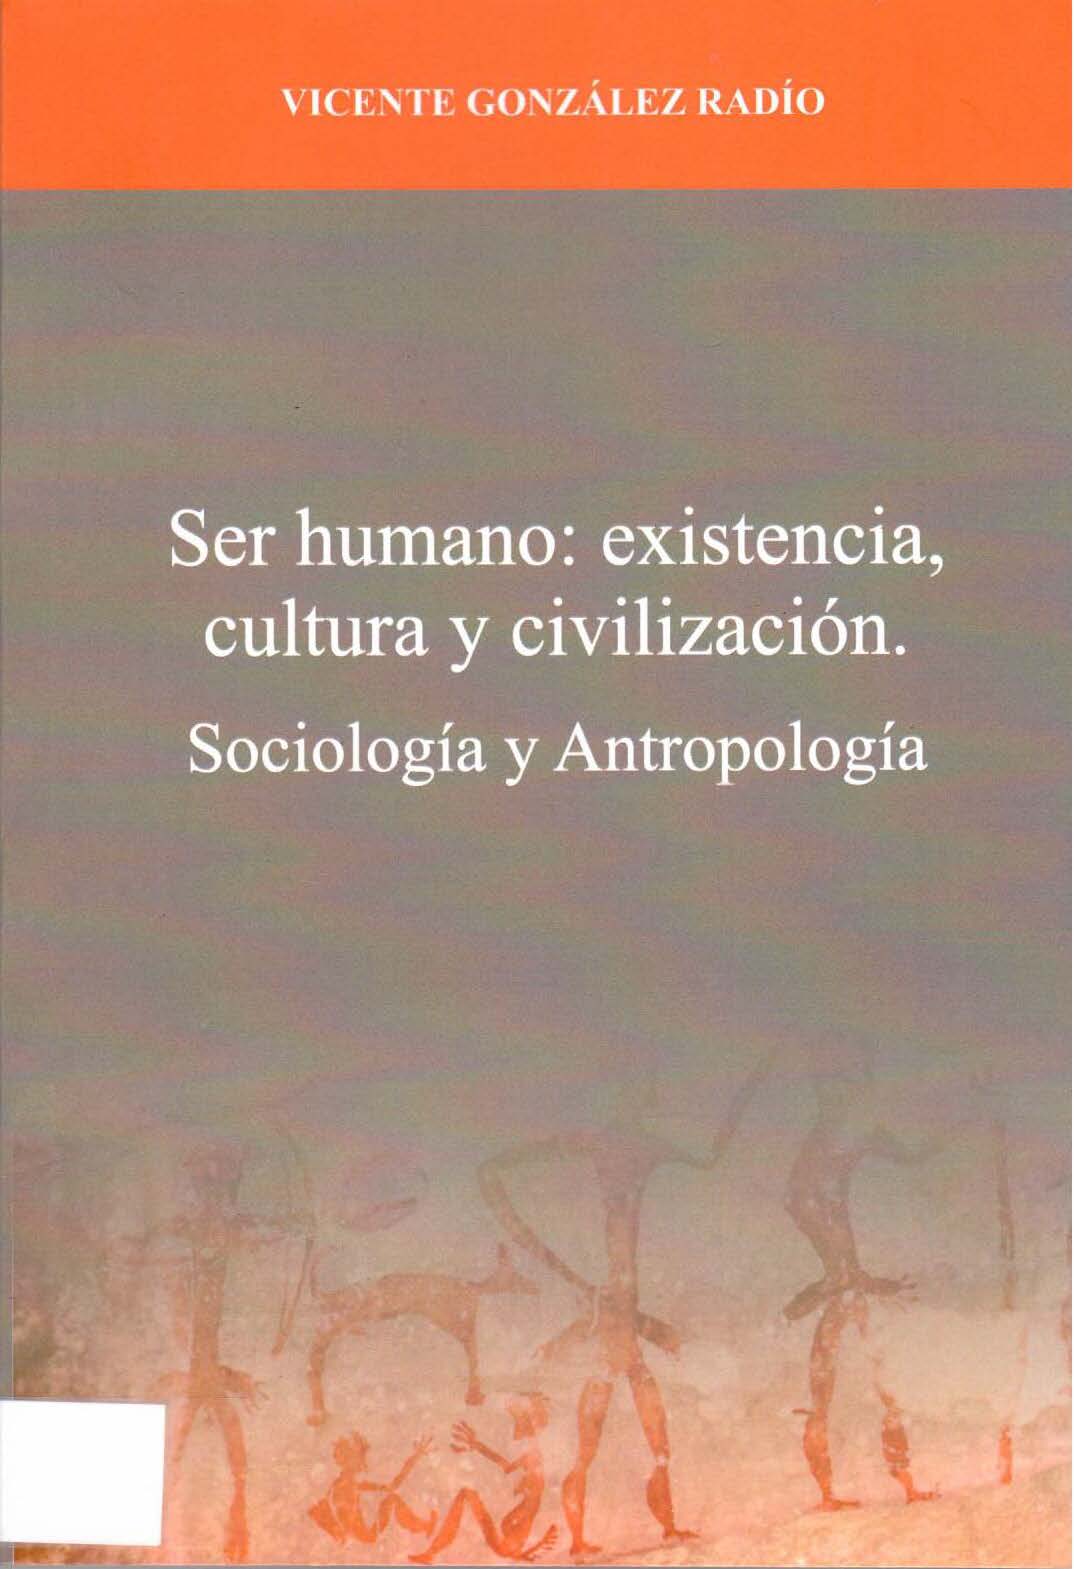 Imagen de portada del libro Ser humano: existencia, cultura y civilización